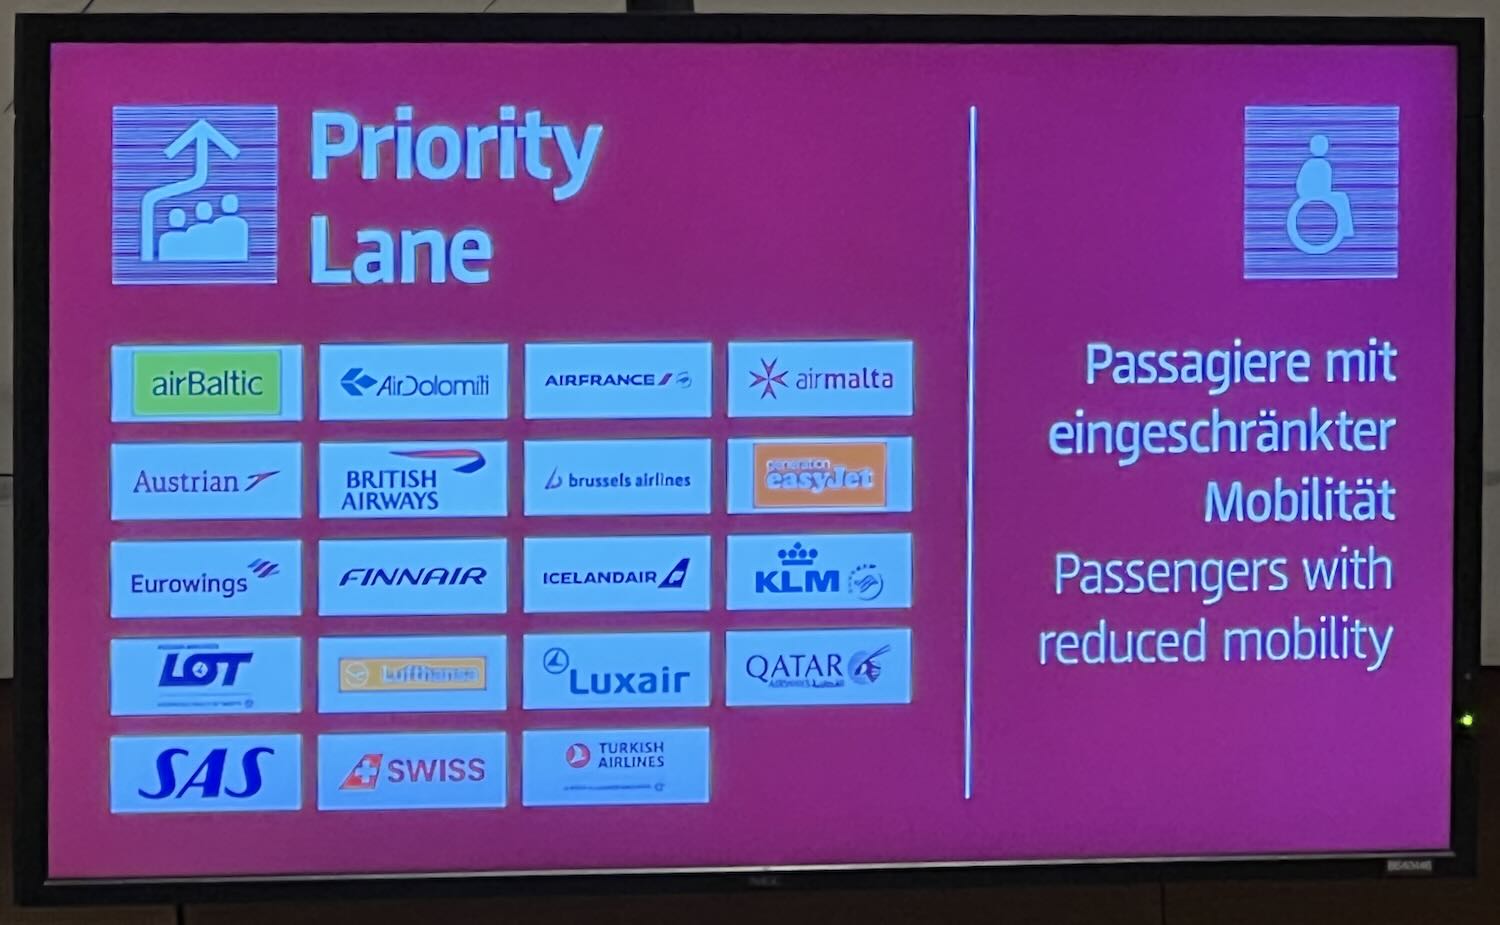 Priority Lane BER airport Airlines